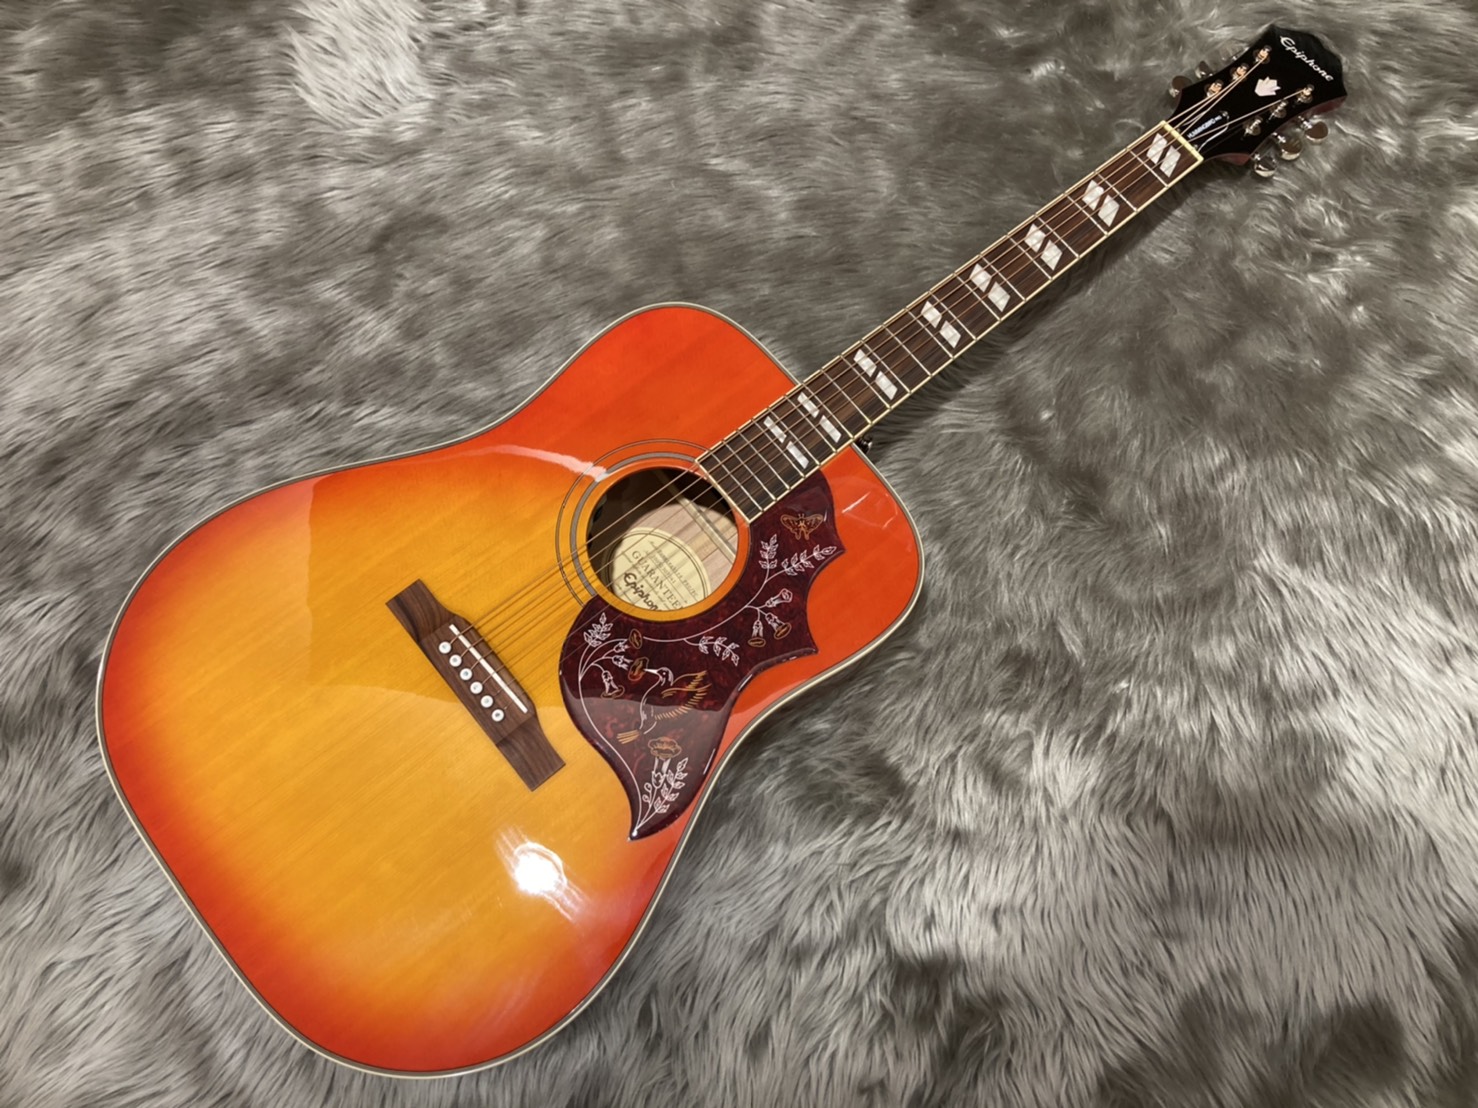 【新入荷情報】品薄のアコースティックギター、Epiphone Hummingbird PRO